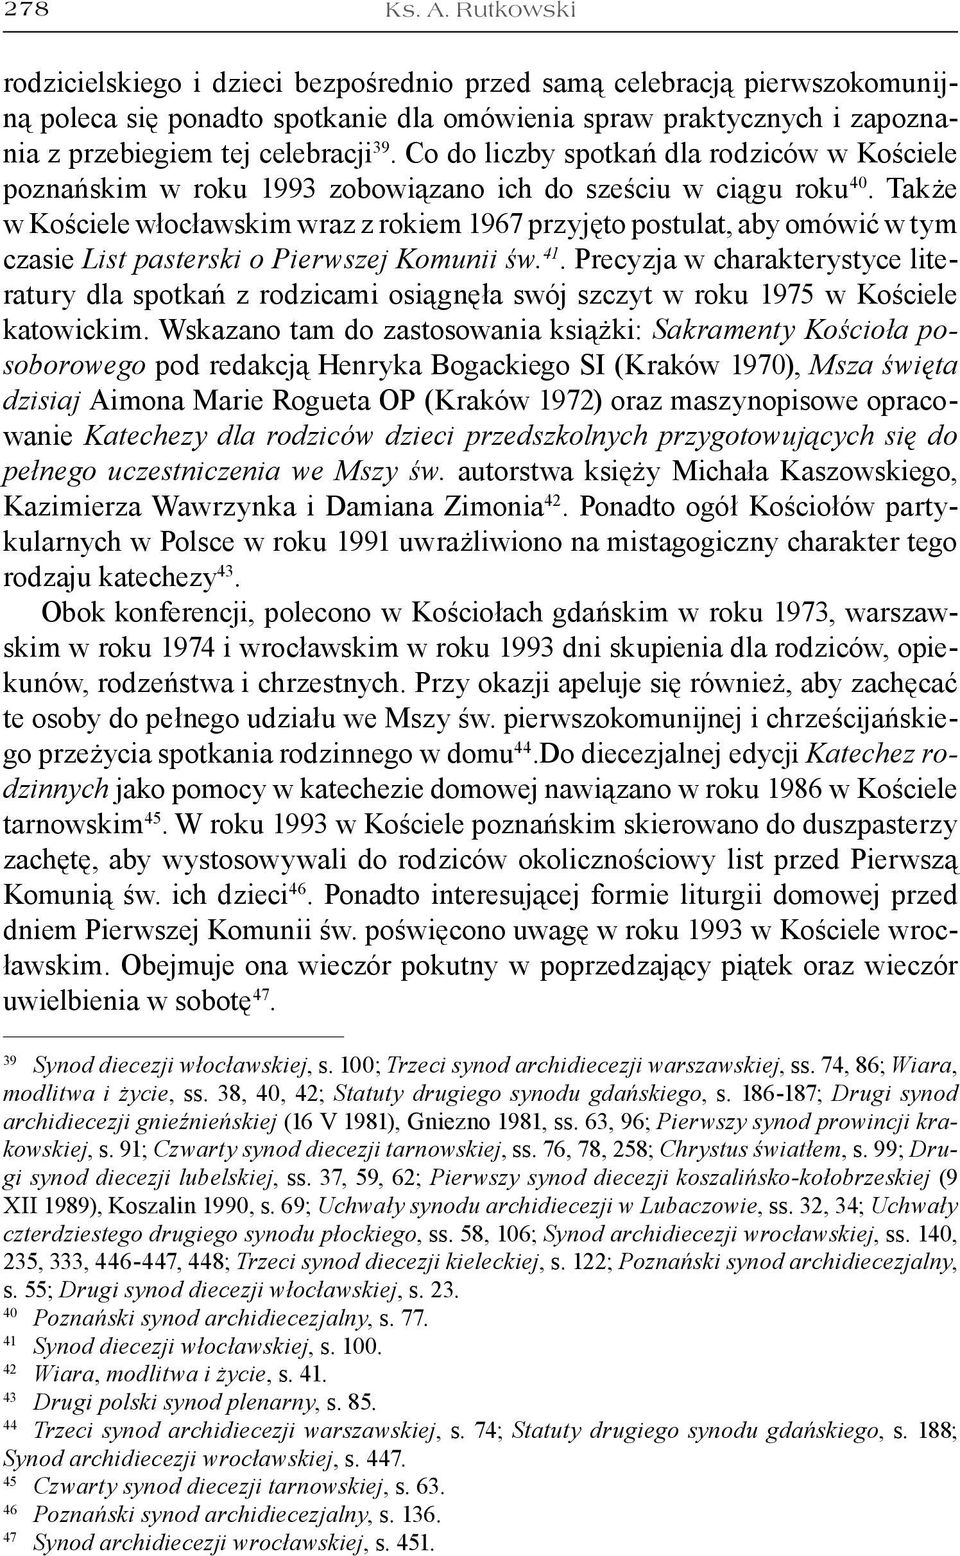 Co do liczby spotkań dla rodziców w Kościele poznańskim w roku 1993 zobowiązano ich do sześciu w ciągu roku 40.